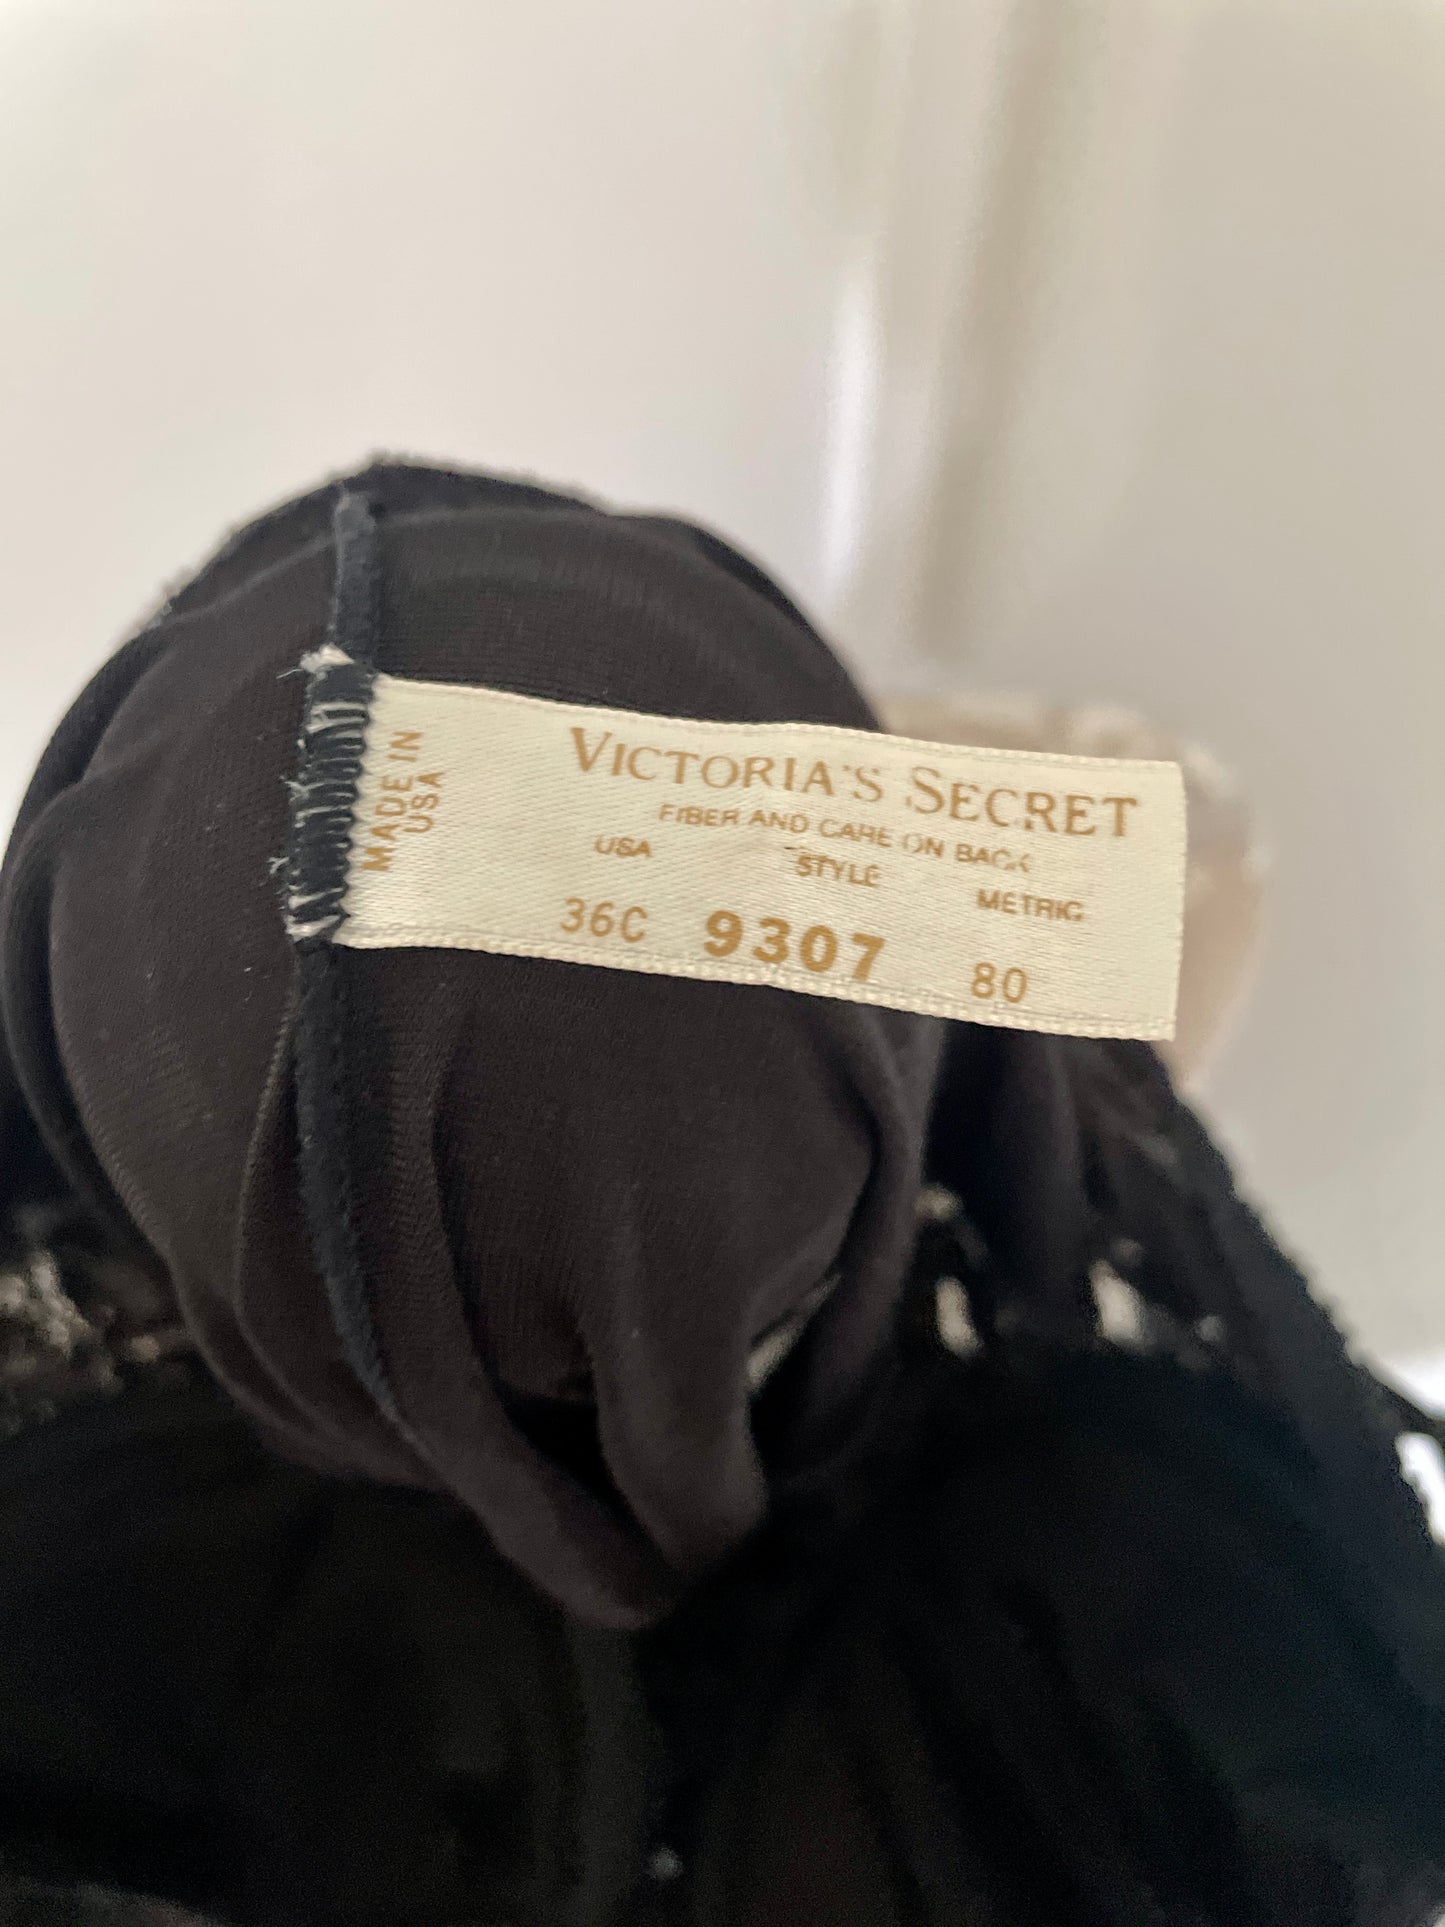 Victoria's Secret black lace bodysuit